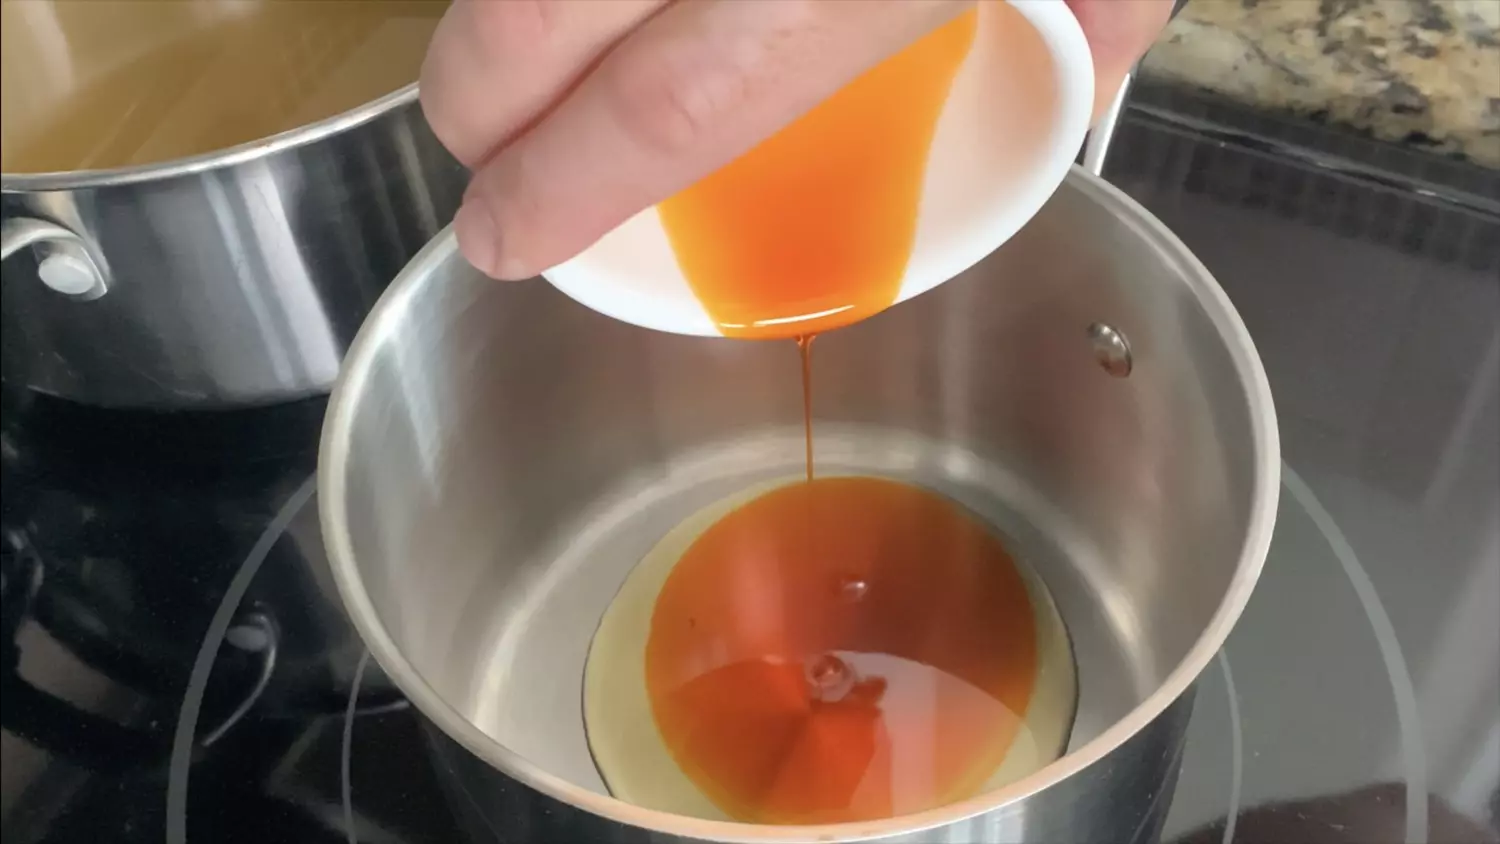 Mix oils and heat on medium heat